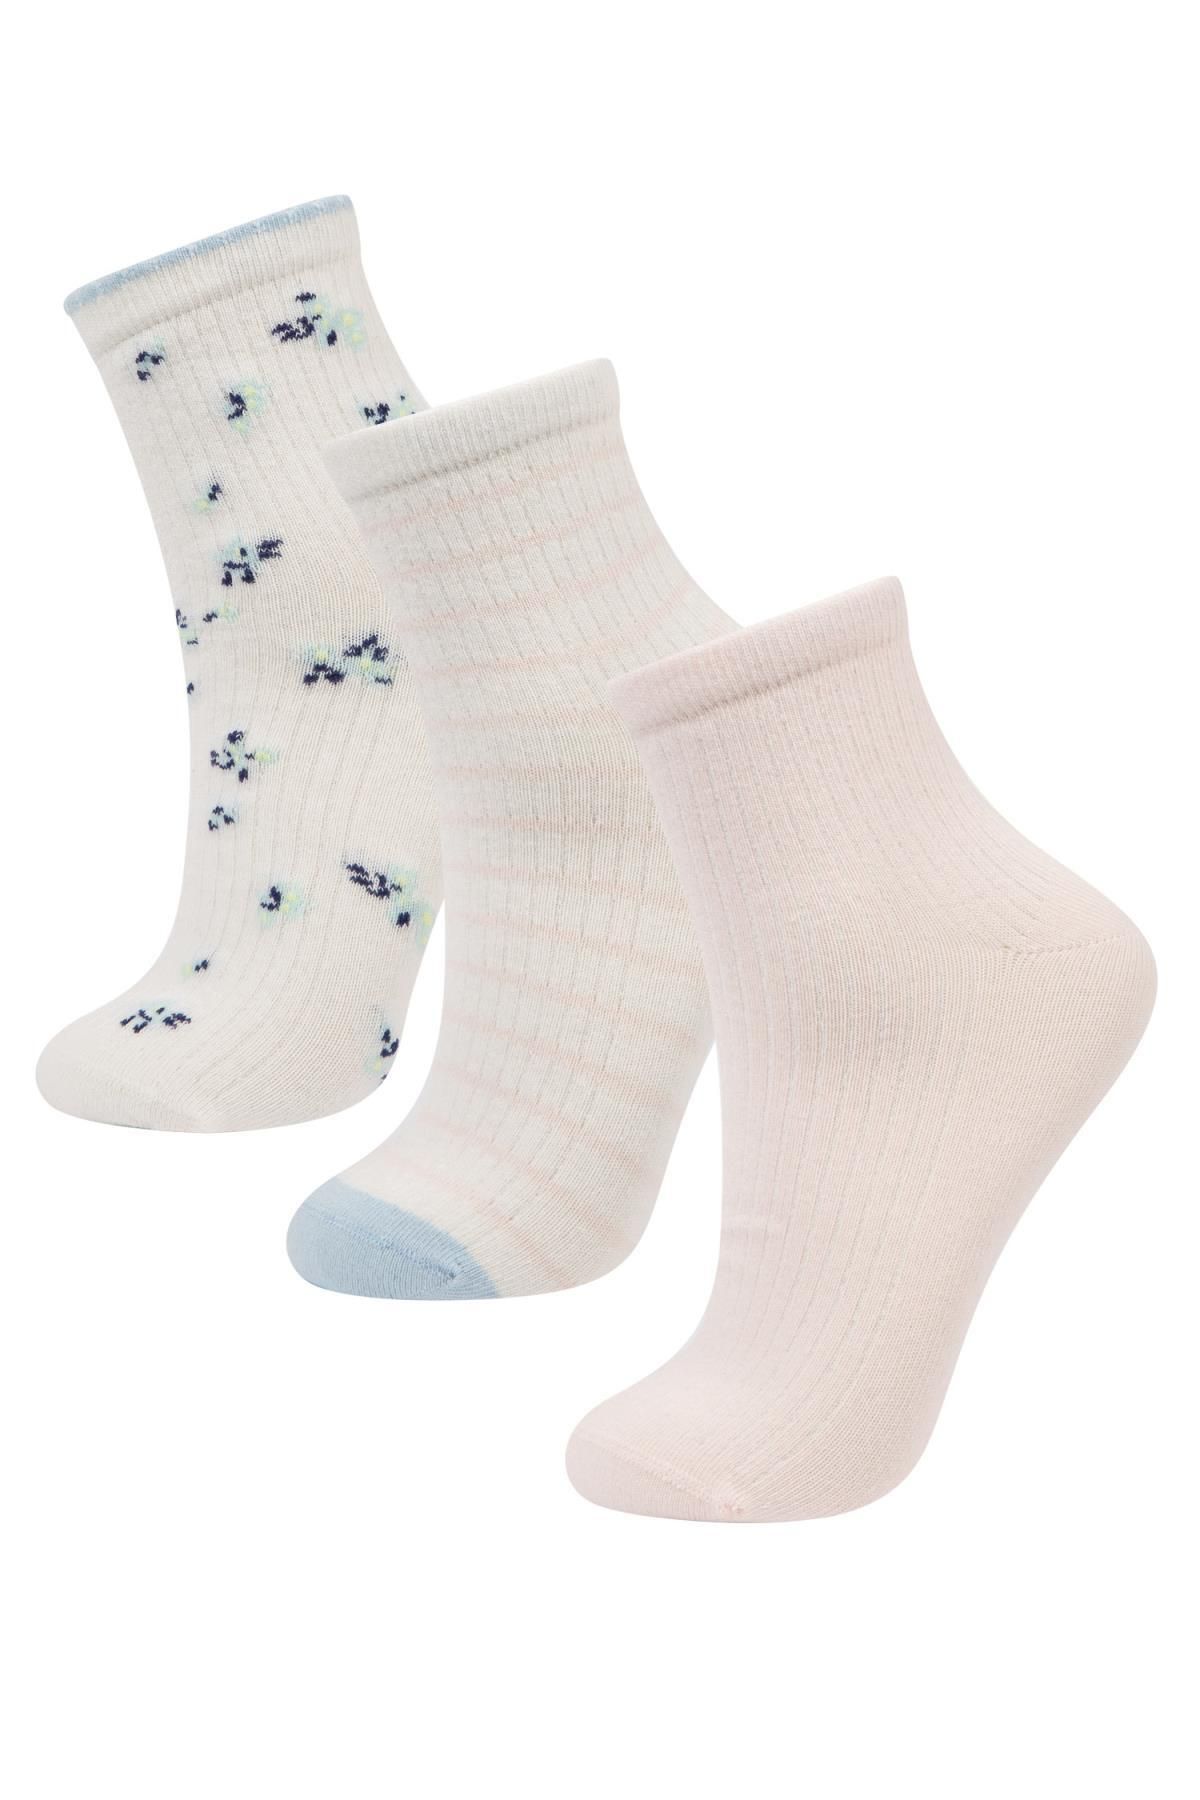 Defacto Kadın Çiçek Desenli 3'lü Pamuklu Soket Çorap